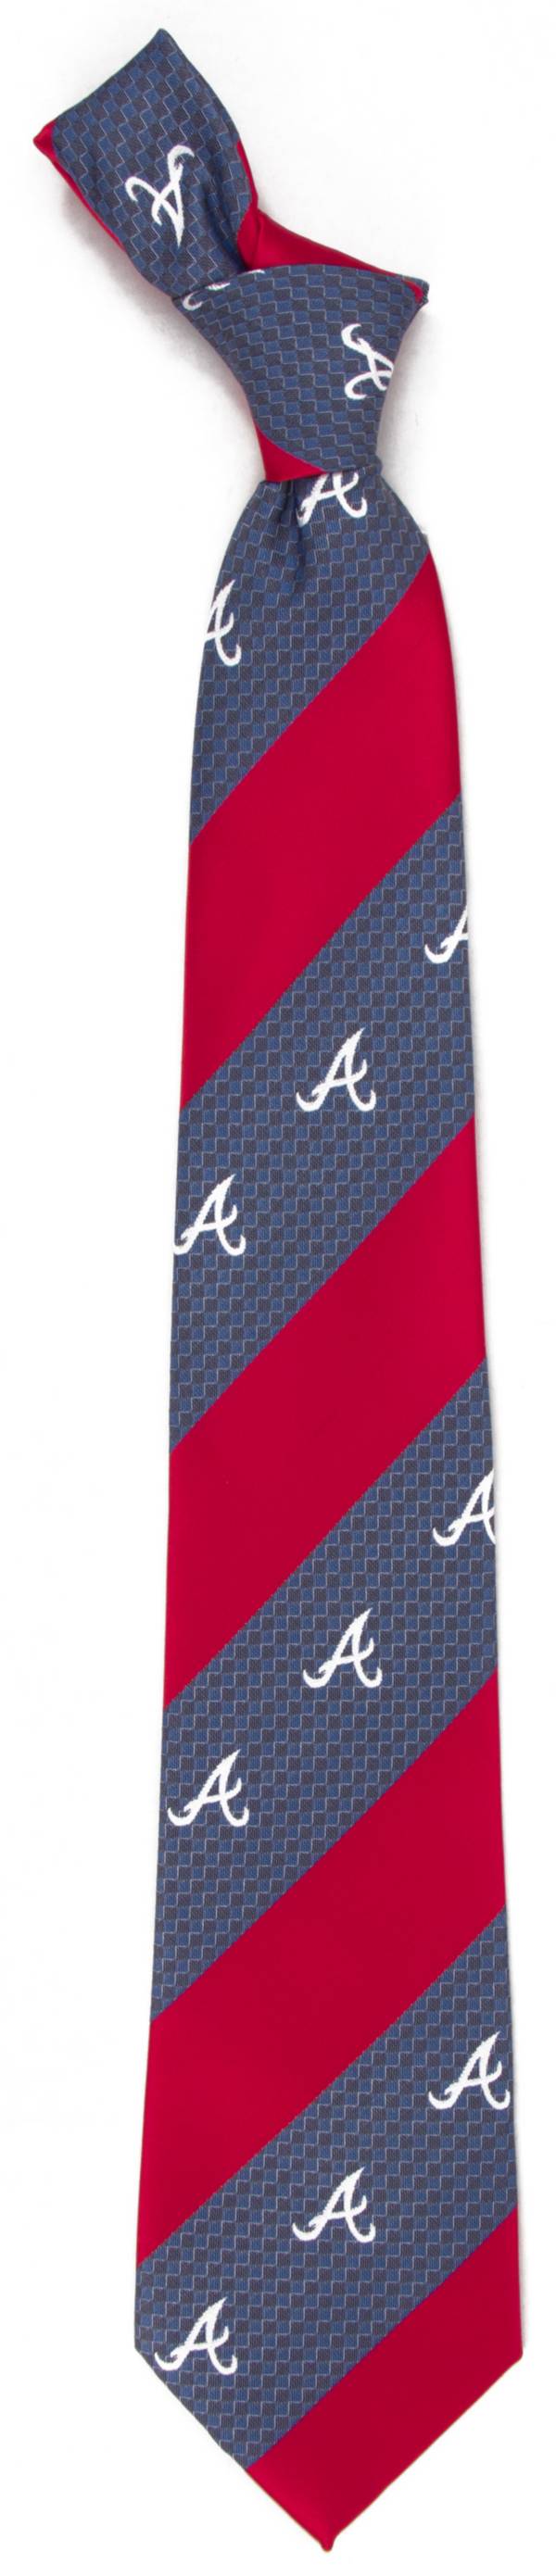 Eagles Wings Atlanta Braves Geo Stripe Necktie product image